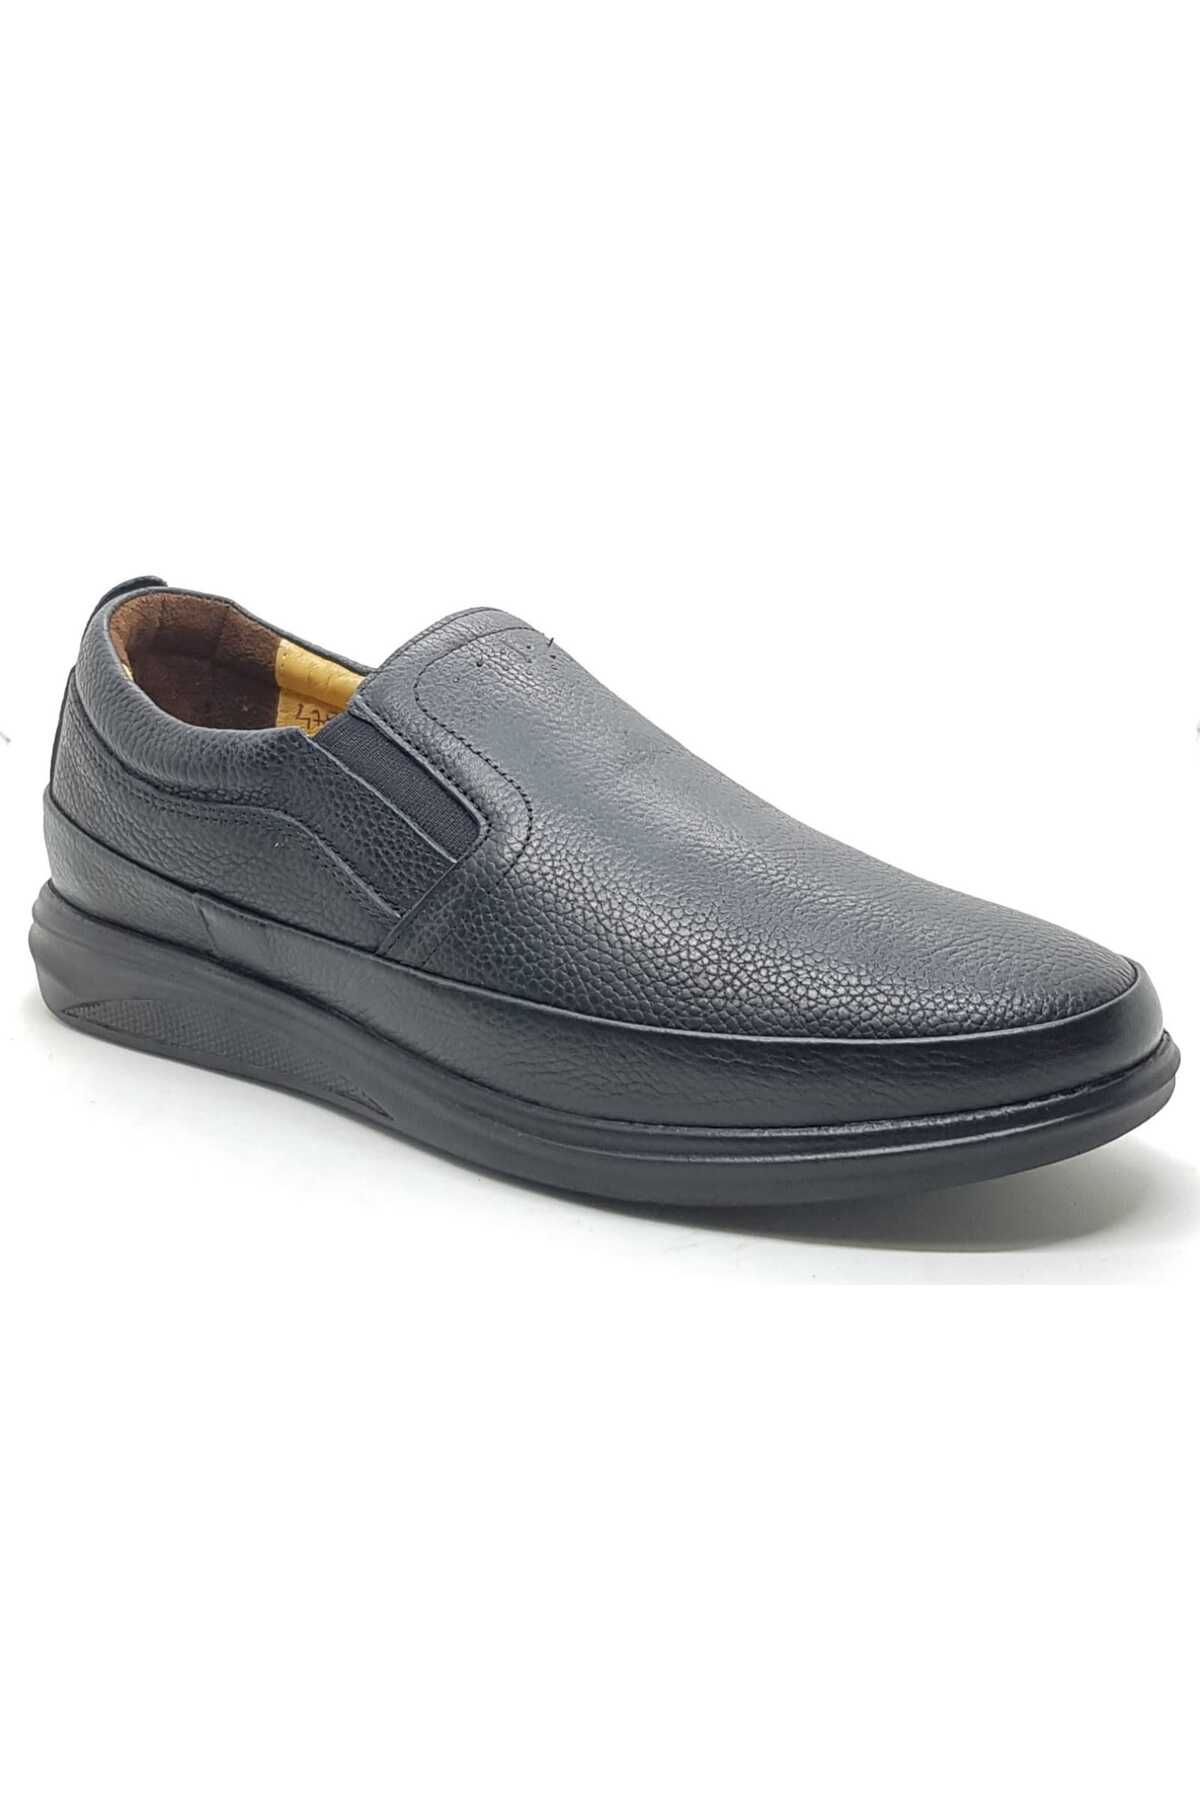 Neco Siyah bağcıksız ayakkabı deri kaymaz kauçuk taban